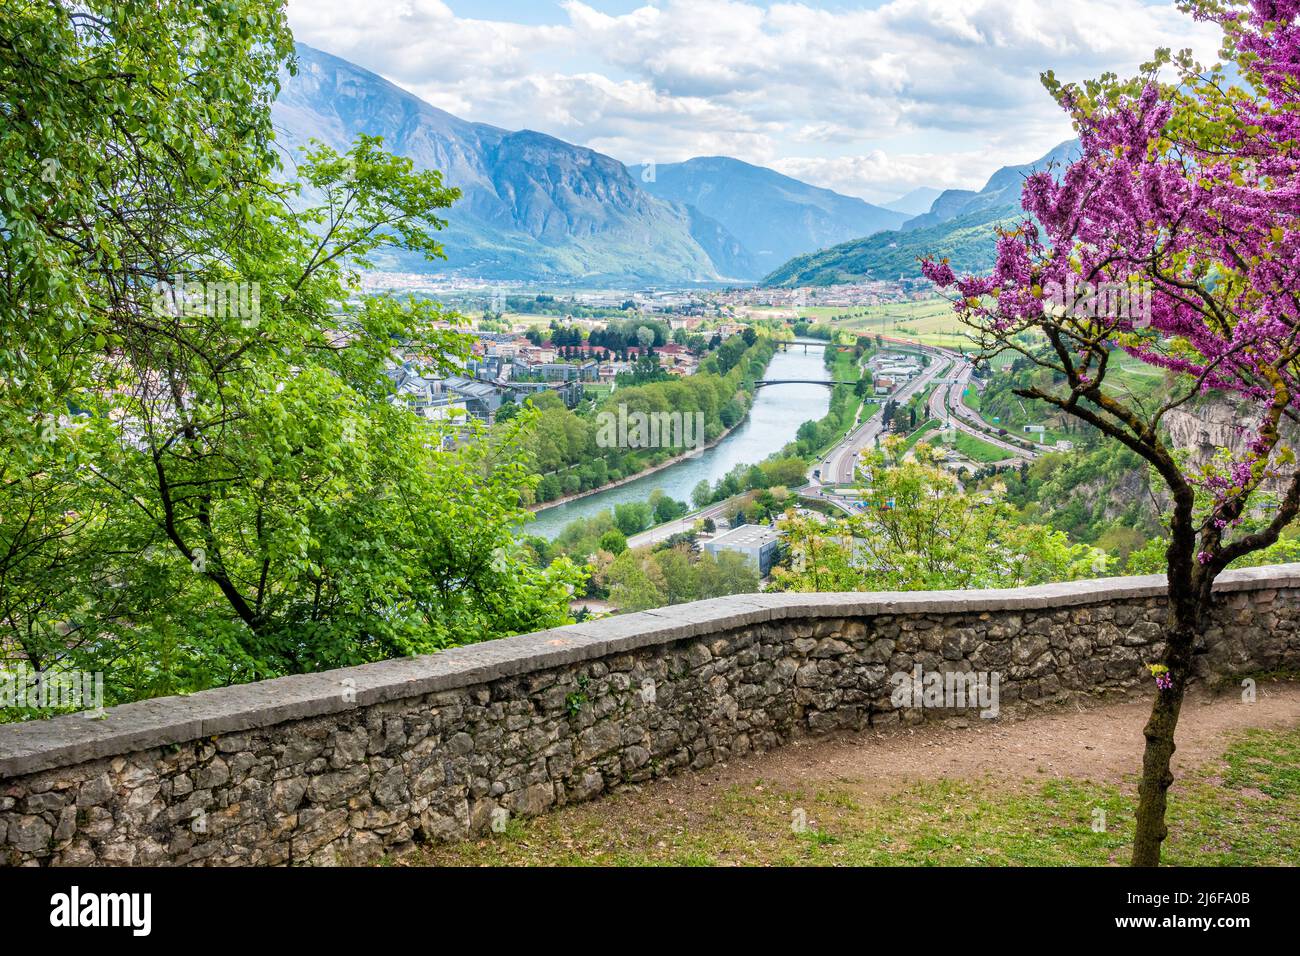 Belle vue panoramique de trente pendant le printemps. Trentin-Haut-Adige, nord de l'Italie. Banque D'Images